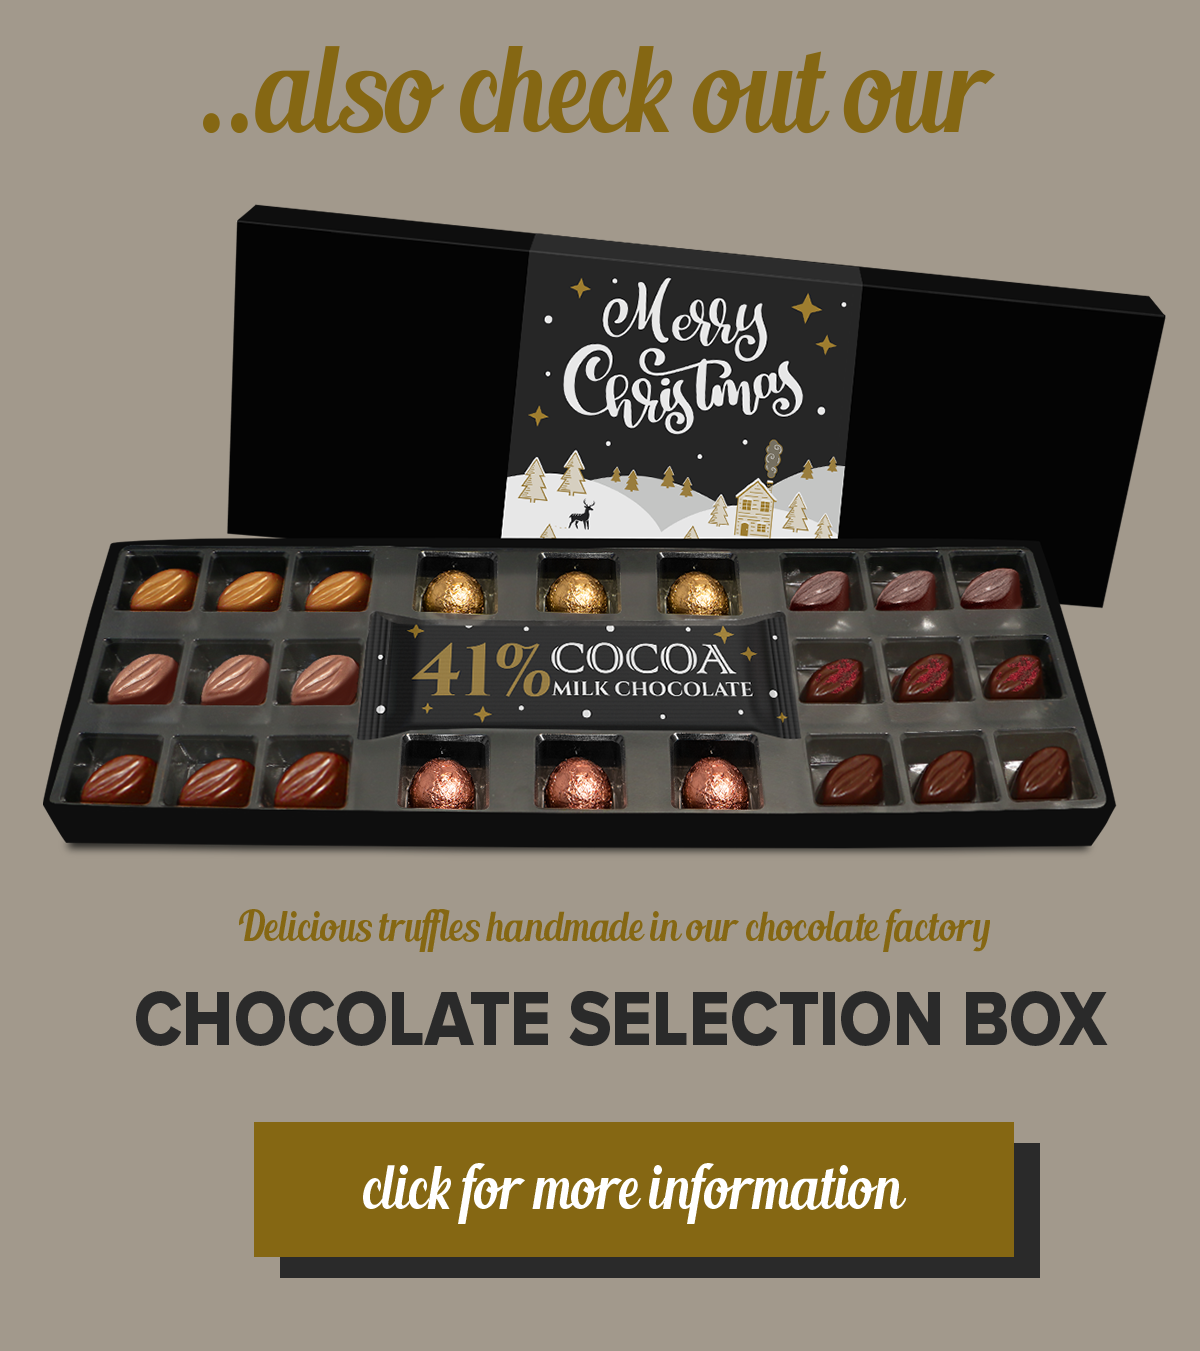 CHOCOLATE SELECTION BOX